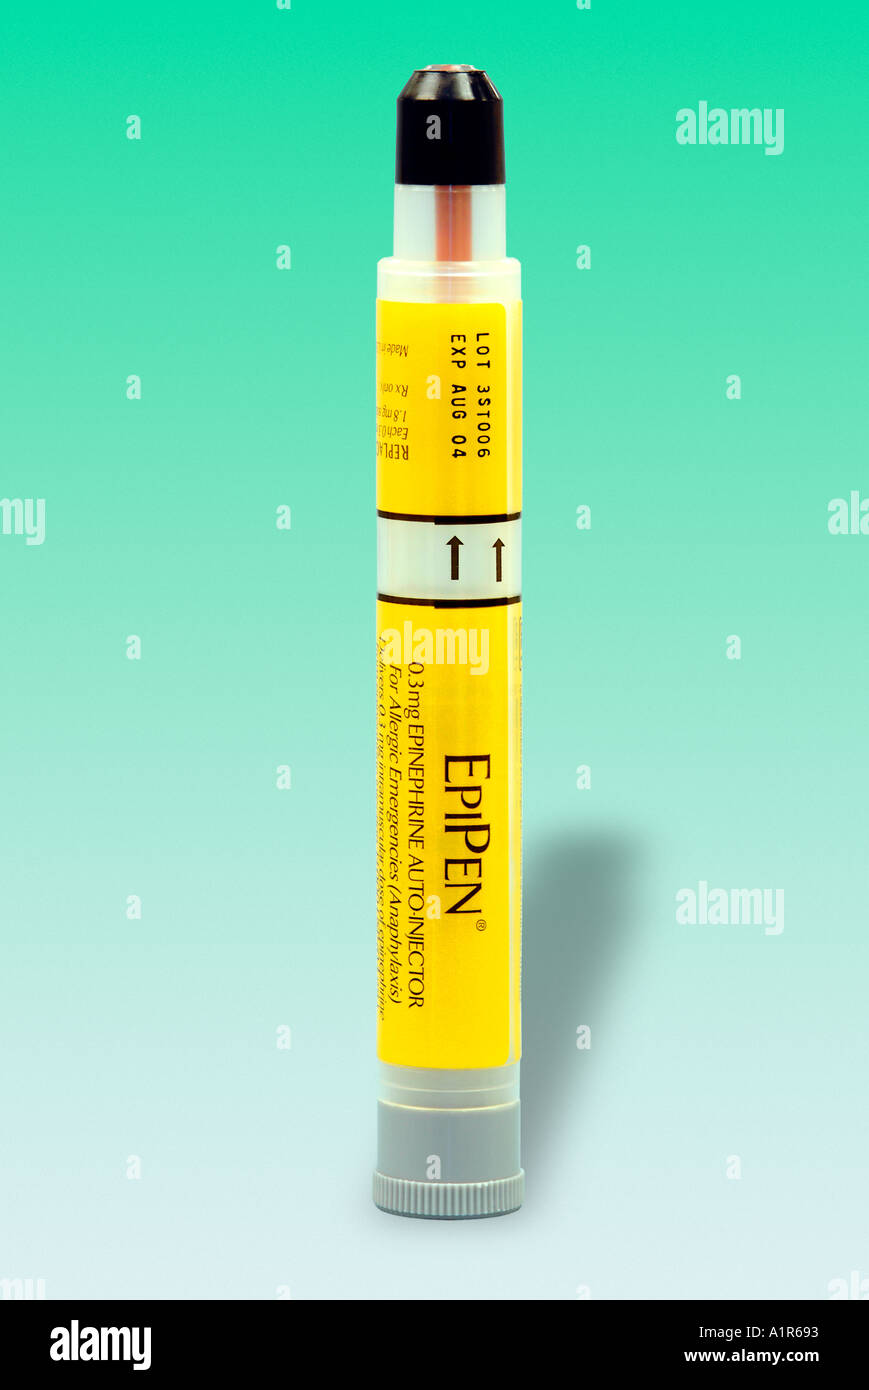 EpiPen - pour traiter l'anaphylaxie, une réaction allergique grave, avec une injection d'épinéphrine. Banque D'Images